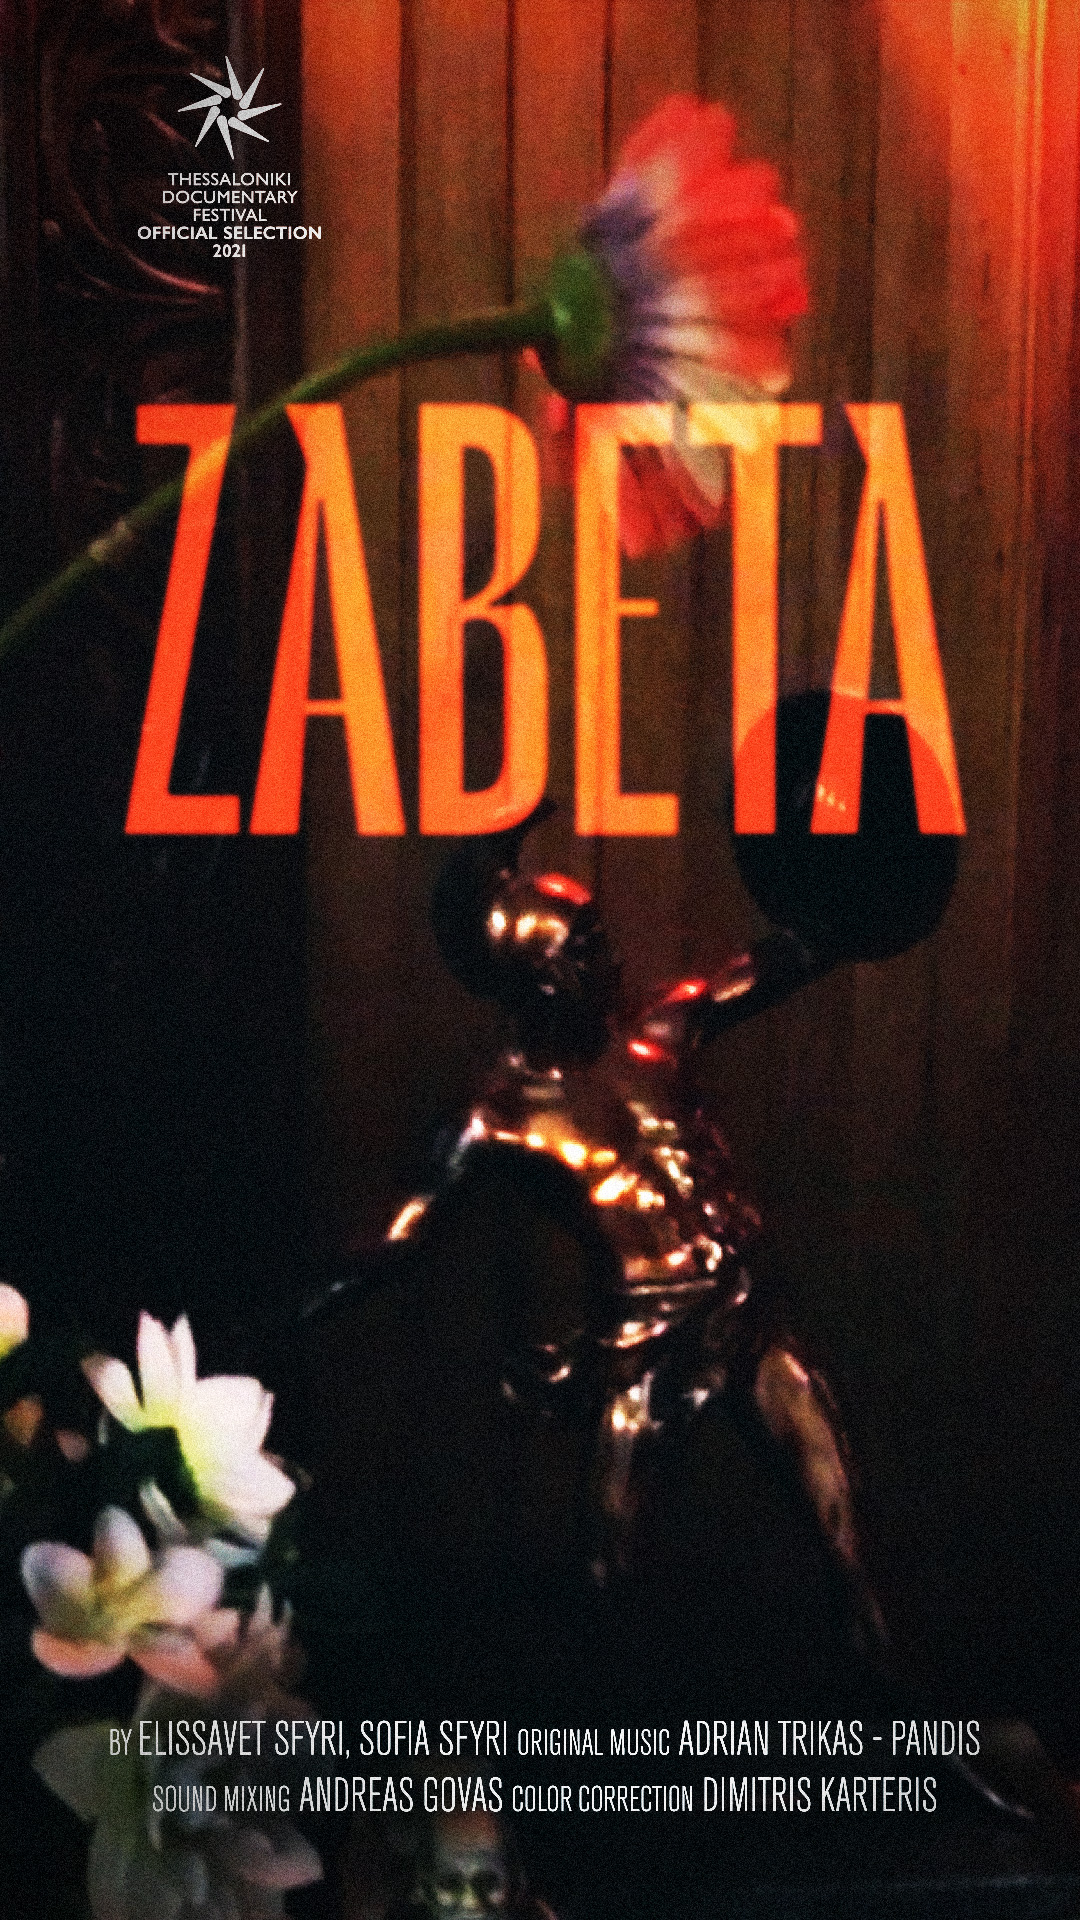 Η αφίσα του ντοκιμαντέρ μικρού μήκους "Ζαμπέτα" των Ελισάβετ και Σοφίας Σφυρή